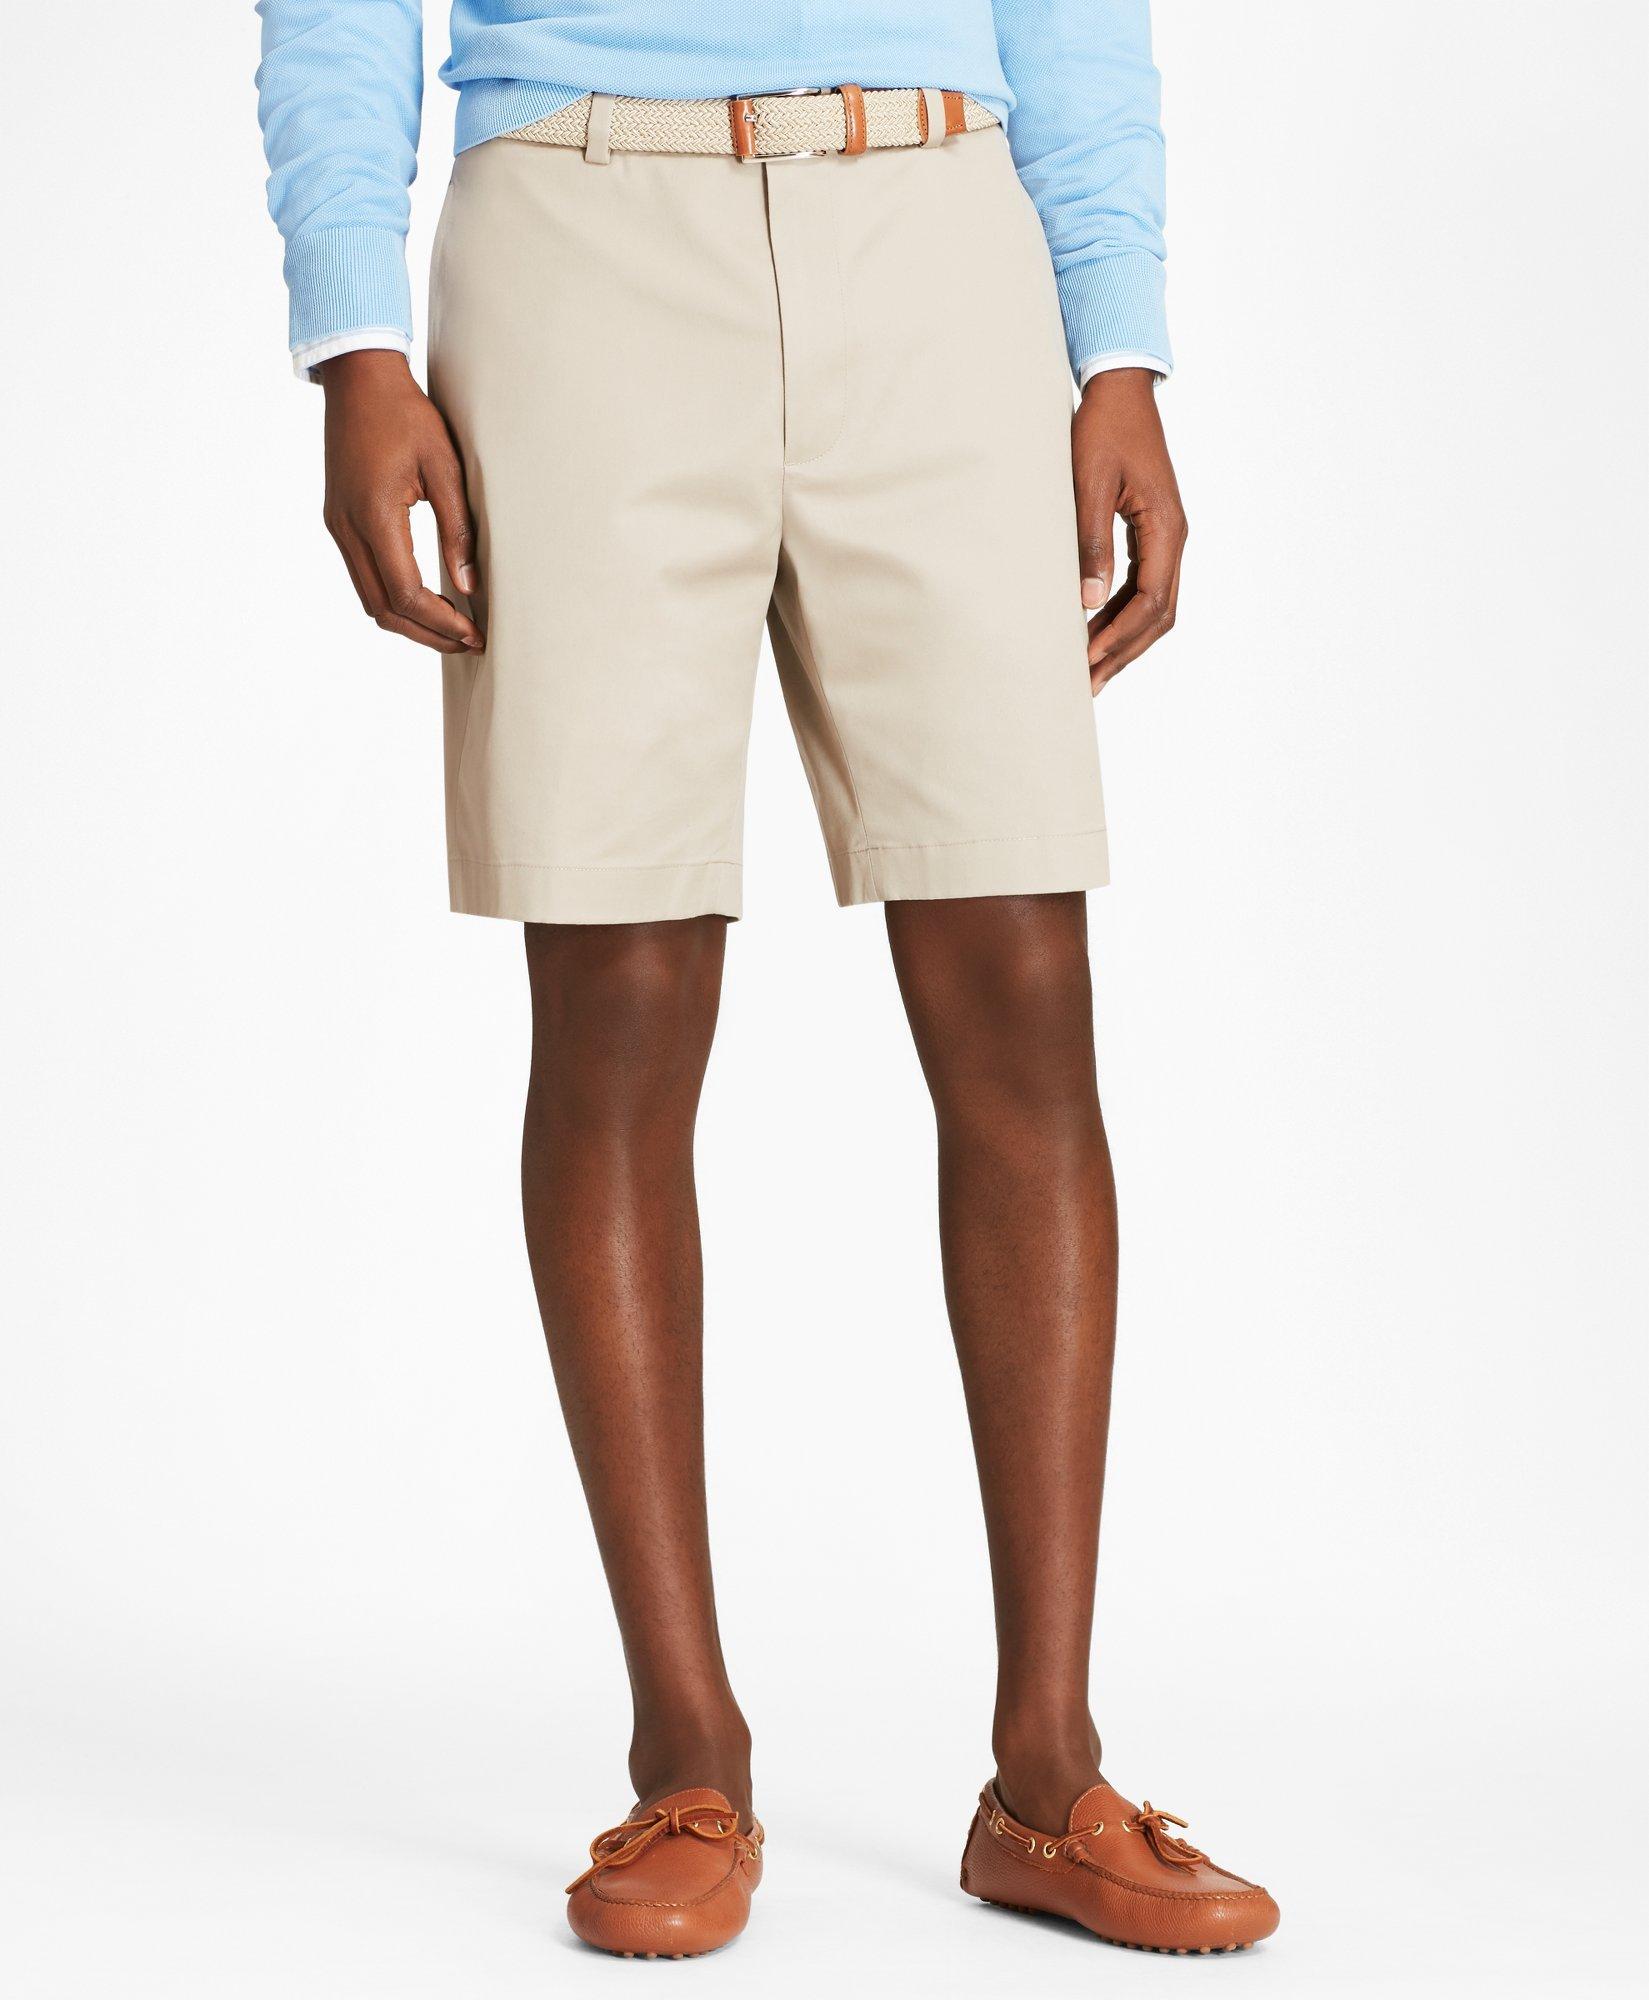 Brooks Brothers 9" Flat Front Stretch Advantage Chino Shorts | Khaki | Size 32